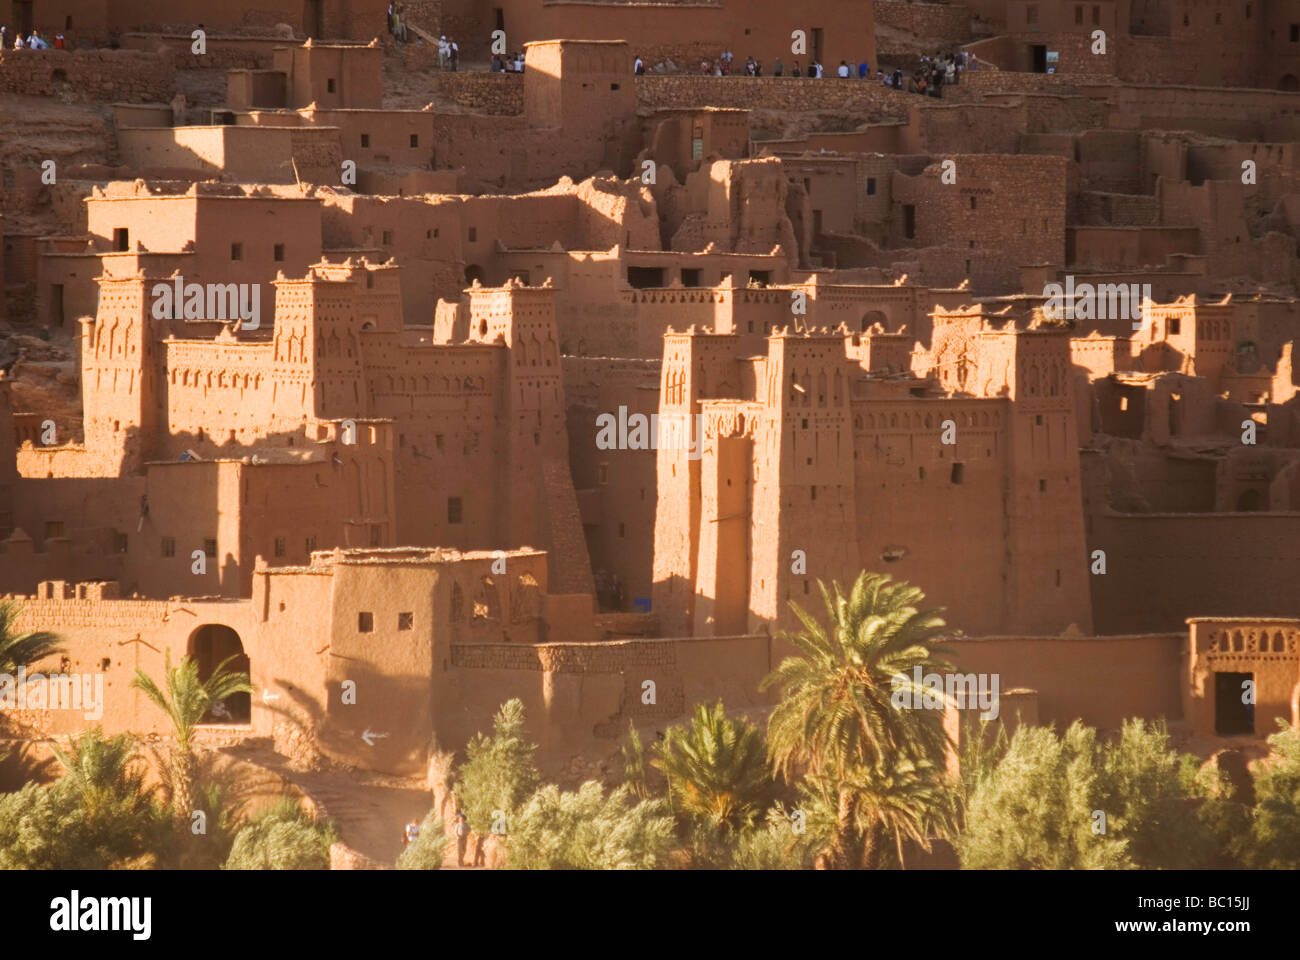 Le site du patrimoine mondial de l'Unesco d'Ait Ben Haddou au coucher du soleil du sud Maroc Afrique du Nord Banque D'Images